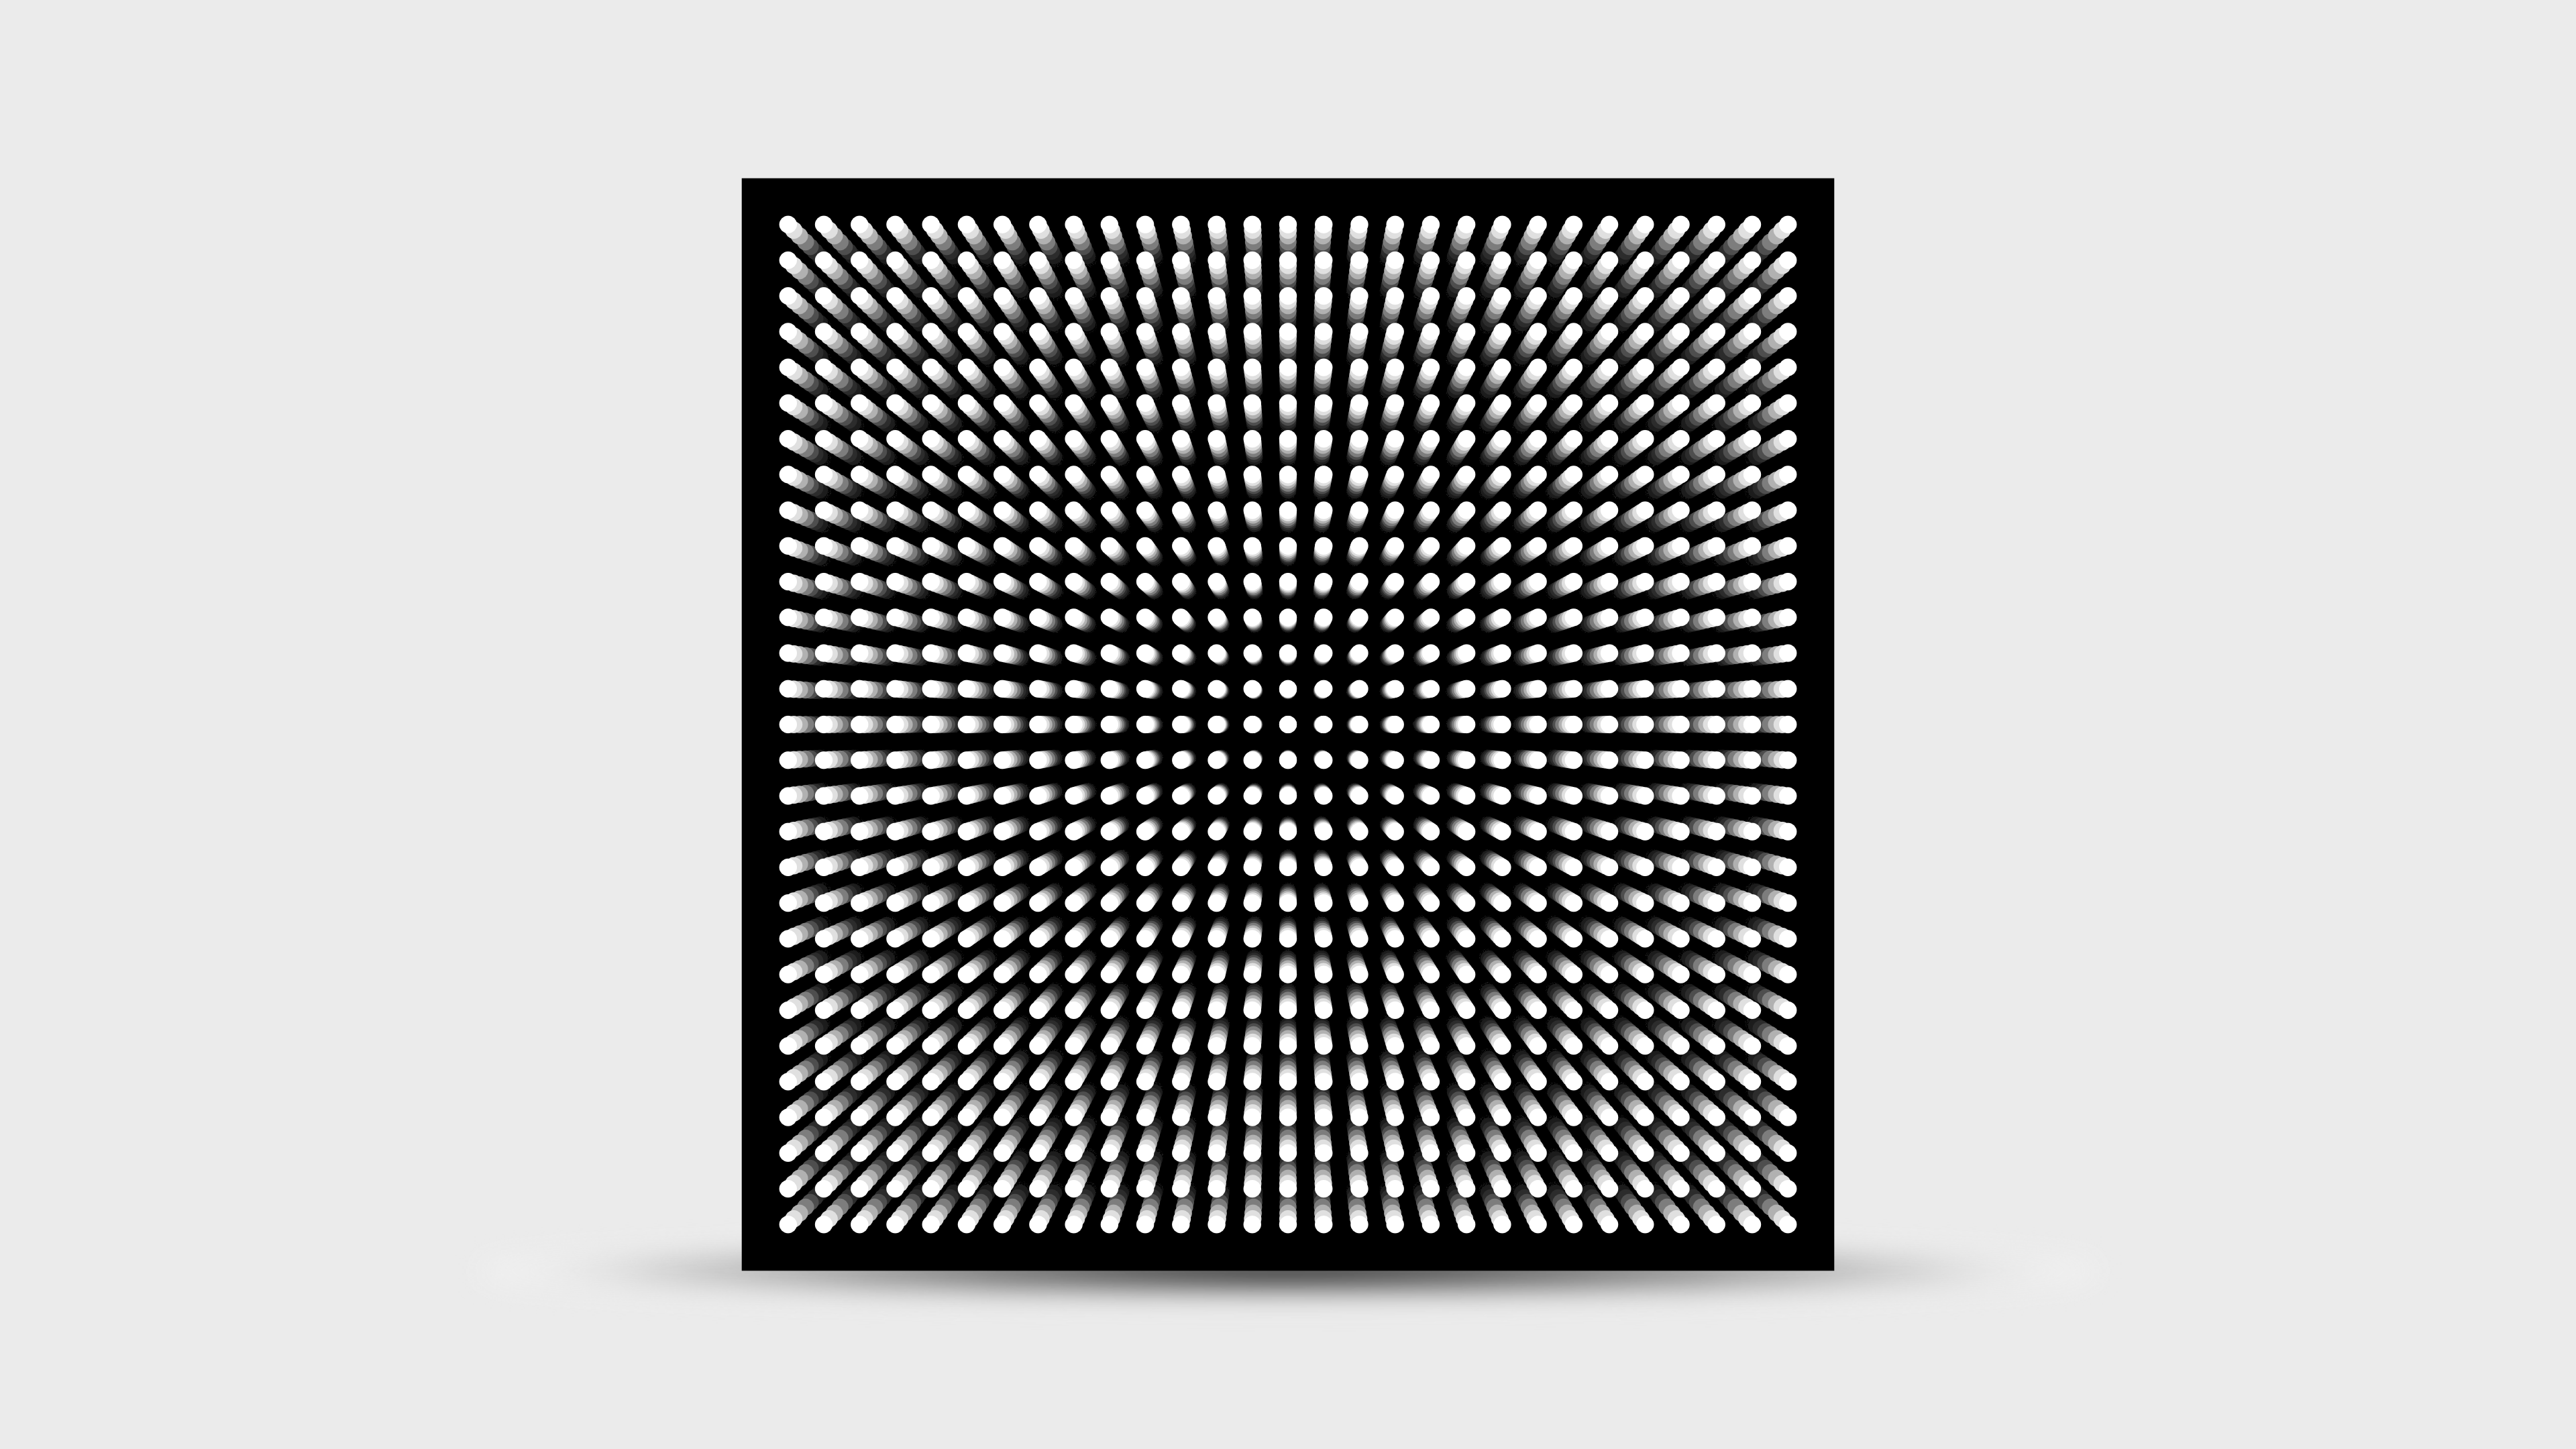 General 3840x2160 Flatdesign minimalism optical illusion white white background simple background